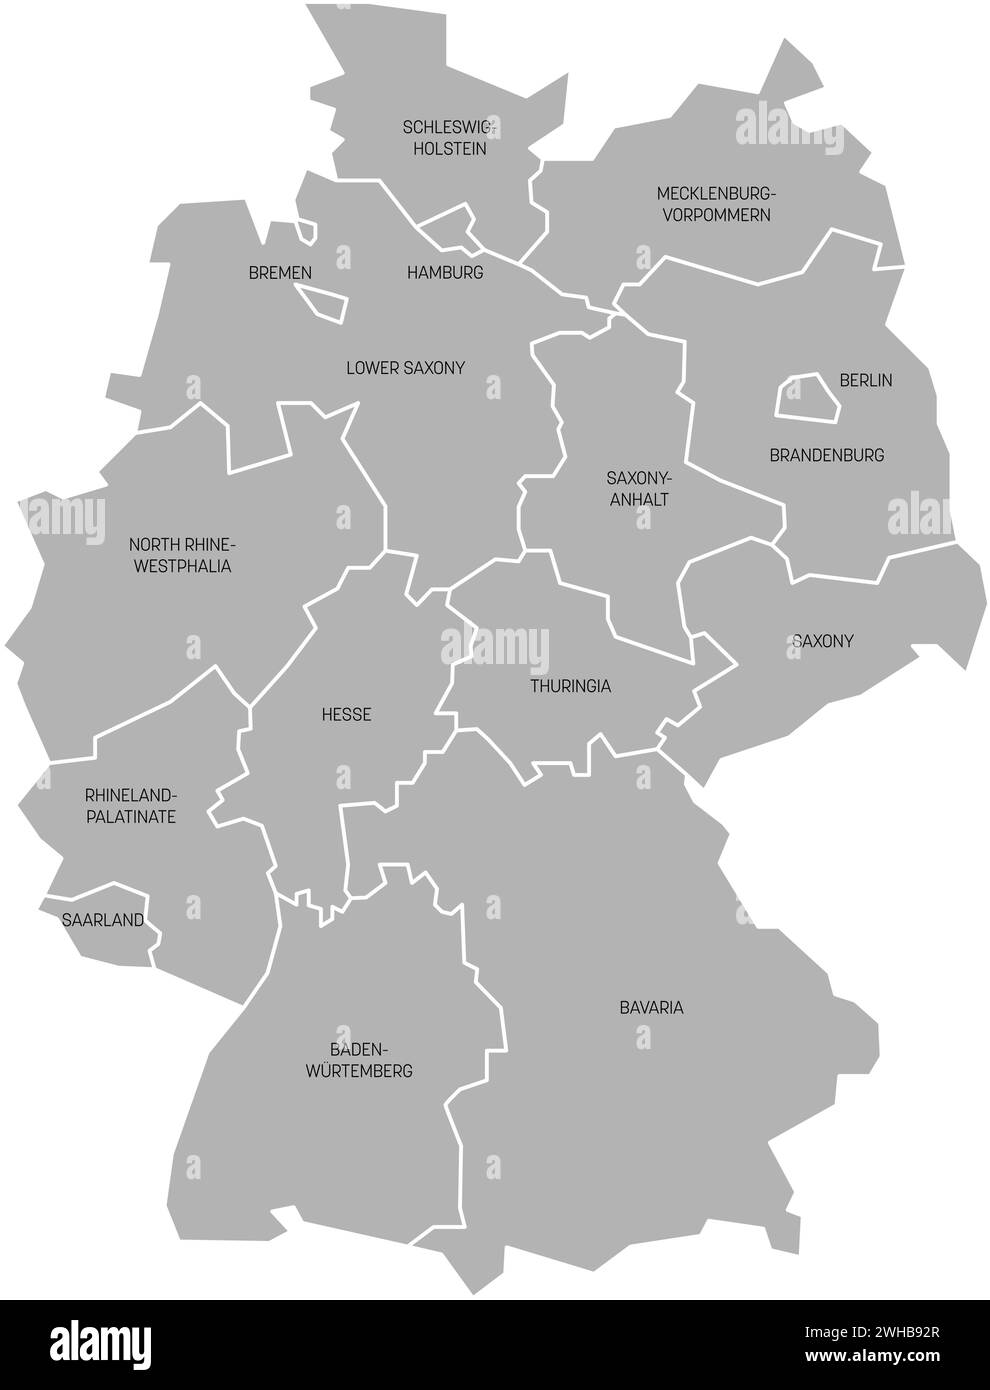 Die Karte Deutschlands weicht auf 13 bundesländer und 3 stadtstaaten ab – Berlin, Bremen und Hamburg, Europa. Einfache flache graue Vektorkarte mit schwarzen Etiketten. Stock Vektor